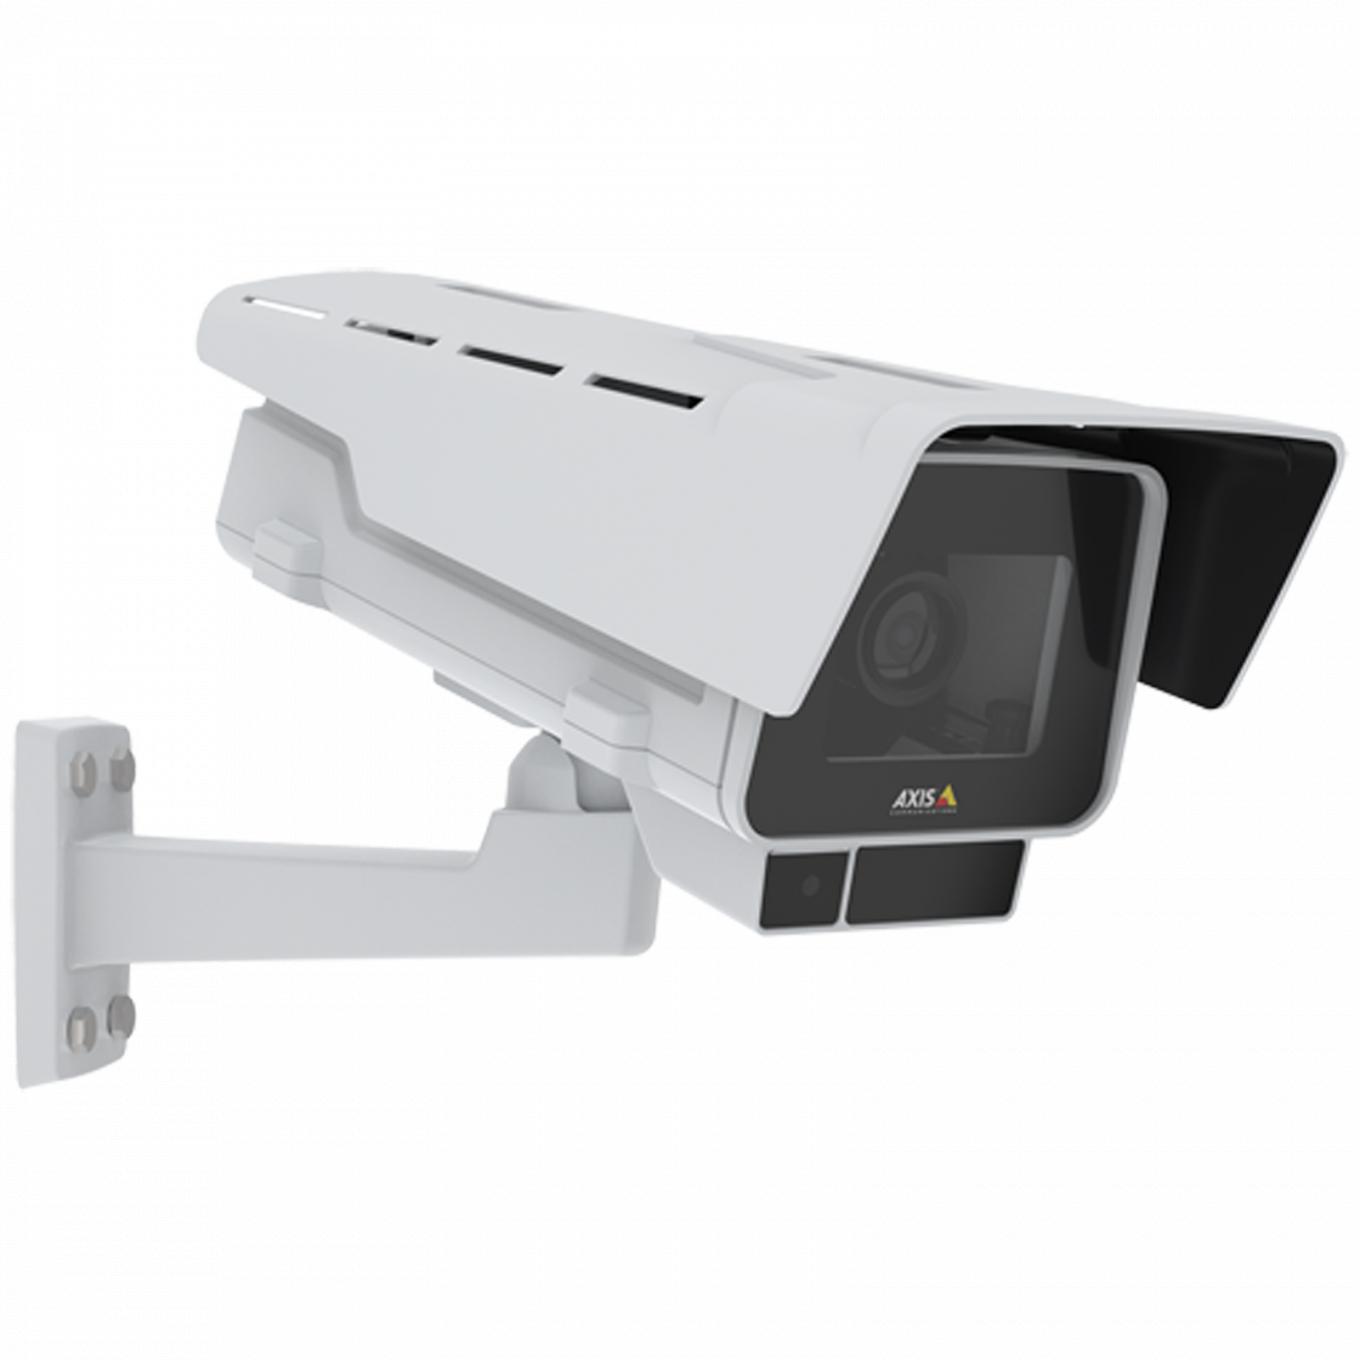 AXIS P1378-LE IP Camera è dotata di stabilizzatore elettronico dell'immagine e OptimizedIR. Il dispositivo è visto dal suo angolo destro.